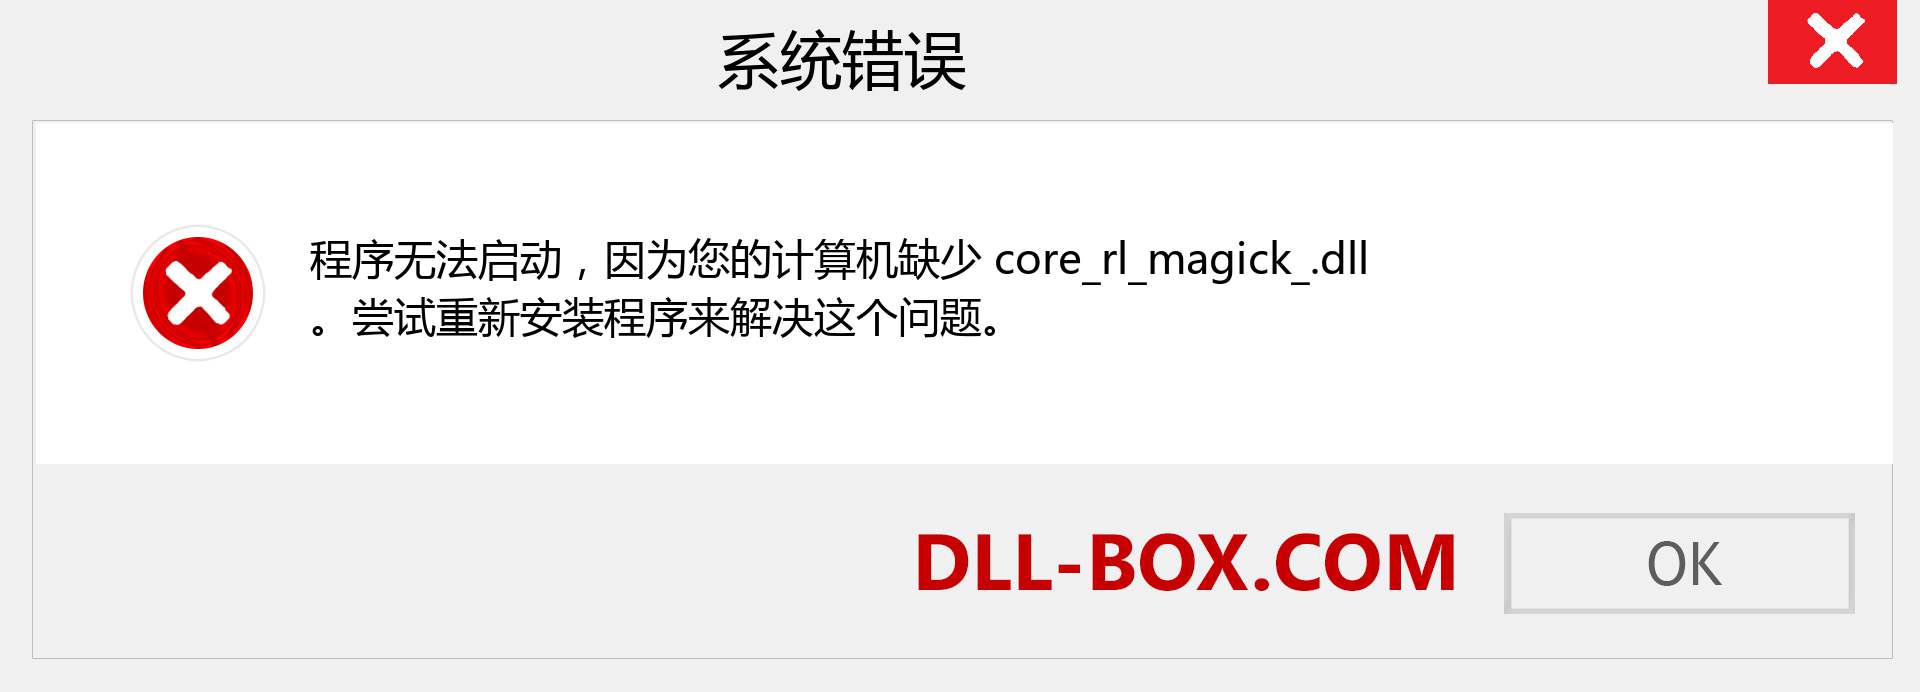 core_rl_magick_.dll 文件丢失？。 适用于 Windows 7、8、10 的下载 - 修复 Windows、照片、图像上的 core_rl_magick_ dll 丢失错误